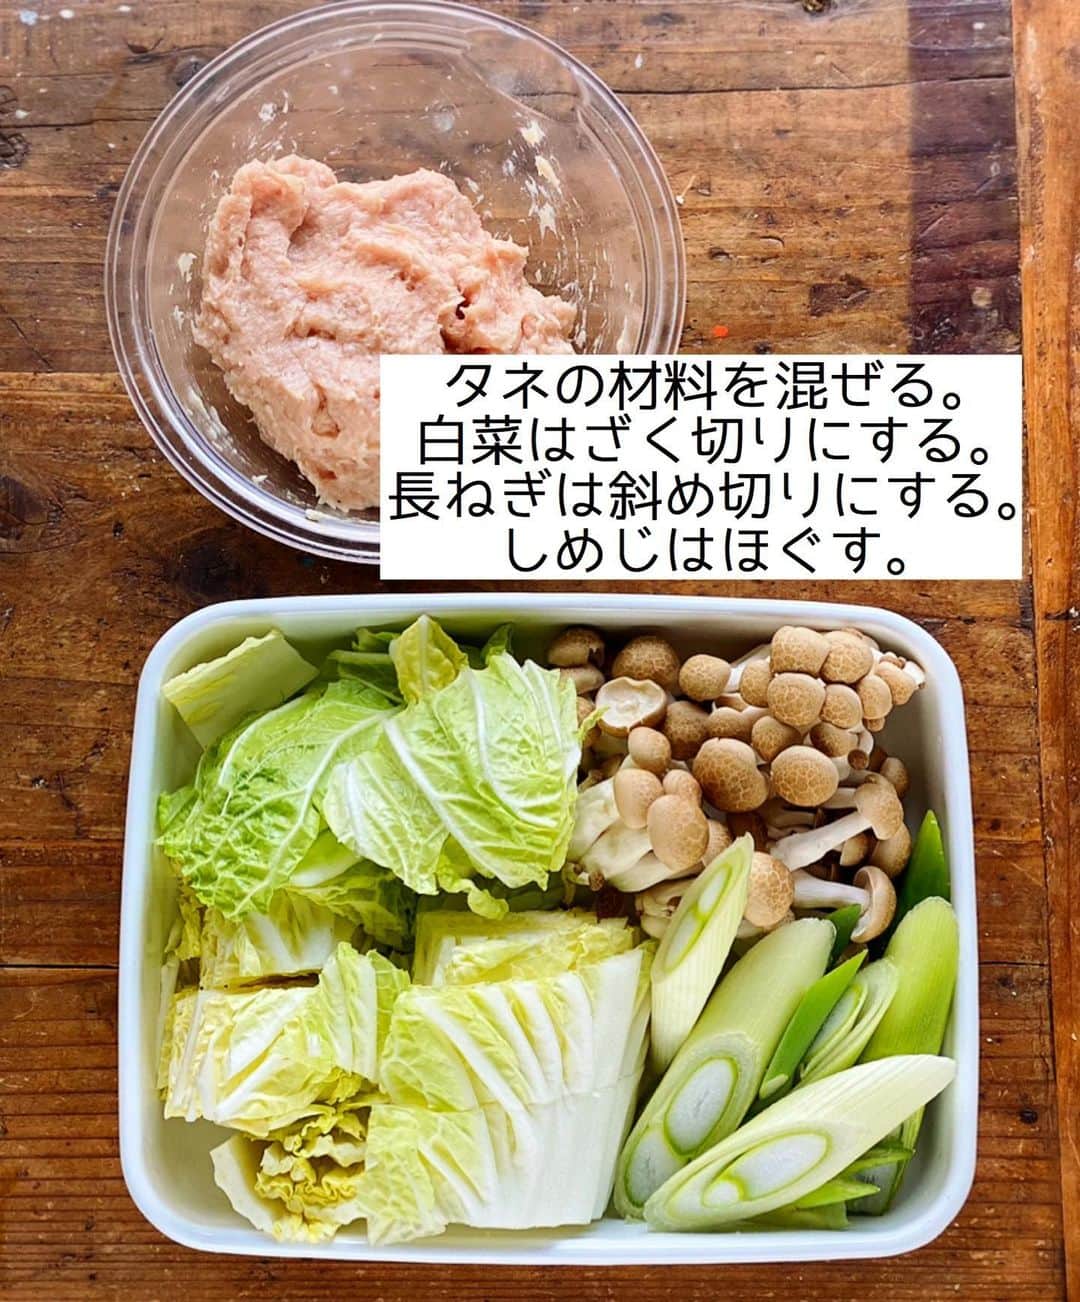 Mizuki【料理ブロガー・簡単レシピ】さんのインスタグラム写真 - (Mizuki【料理ブロガー・簡単レシピ】Instagram)「・﻿ 【#レシピ 】ーーーーー﻿ ♡鶏団子のうま塩鍋♡﻿ ーーーーーーーーーーー﻿ ﻿ ﻿ ﻿ おはようございます(*^^*)﻿ ﻿ 今日ご紹介させていただくのは﻿ \\ 鶏団子のうま塩鍋 //﻿ ﻿ うま味たっぷりの鶏団子が﻿ あっさりコクのあるスープと好相性♡﻿ 野菜もたっぷり食べられますよ〜♩﻿ (〆はうどんかラーメン、雑炊もおすすめ🥰)﻿ ﻿ とっても簡単にできるので﻿ よかったらお試し下さいね(*´艸`)﻿ ﻿ ﻿ ﻿ ＿＿＿＿＿＿＿＿＿＿＿＿＿＿＿＿＿＿＿＿﻿ 【2〜3人分】﻿ ●鶏ひき肉...200g﻿ ●水・酒...各大1﻿ ●片栗粉...小1﻿ ●塩こしょう...少々﻿ 白菜...1/6個(250g)﻿ 長ねぎ...1/2本﻿ しめじ...1袋﻿ ☆水...600ml﻿ ☆鶏がらスープ...大1﻿ ☆醤油・ごま油...各小2﻿ ﻿ 1.ボウルに●を入れてよく混ぜる(タネ)。白菜はざく切り、長ねぎは斜め切りにする。しめじはほぐす。﻿ 2.鍋に☆を入れて中火で煮立て、タネをスプーンで落とし入れて3分煮る。続けて野菜も加え、更に5分煮る。﻿ ￣￣￣￣￣￣￣￣￣￣￣￣￣￣￣￣￣￣￣￣﻿ ﻿ ﻿ ﻿ ﻿ 《ポイント》﻿ ♦︎ひき肉の種類(もも・むね)はお好みで♩私はもも使用です♩﻿ ♦︎タネはスプーンを2本使うと落とし入れやすくなります♩﻿ ♦︎野菜はアレンジして下さいね♩﻿ ﻿ ﻿ ﻿ ﻿ ﻿ ﻿ ﻿ ﻿ 📕新刊発売中📕﻿ 【ラクしておいしい！#1品晩ごはん 】﻿ ￣￣￣￣￣￣￣￣￣￣￣￣￣￣￣￣￣﻿ 私たちだってヘトヘトな日がある•••﻿ 毎日何品も作っていられない•••﻿ もうごはんに悩みたくない😢﻿ そんな時、1品ごはんはいかがでしょう？﻿ というご提案です✨﻿ ﻿ 【1品ごはん】は﻿ 副菜いらずで全てがシンプル！﻿ ￣￣￣￣￣￣￣￣￣￣￣￣￣￣￣￣￣￣﻿ 一品つくるだけでいいから﻿ 献立を考えなくてよし！﻿ ￣￣￣￣￣￣￣￣￣￣￣￣￣￣￣￣￣￣﻿ 悩まない、疲れない、﻿ 気力や時間がなくてもなんとかなる！﻿ ￣￣￣￣￣￣￣￣￣￣￣￣￣￣￣￣￣￣﻿ そんな頼りになる﻿ 便利なお助けごはんです☺️💕﻿ (ハイライトに🔗貼っています✨)﻿ ￣￣￣￣￣￣￣￣￣￣￣￣￣￣￣￣￣﻿ ﻿ ﻿ ﻿ ﻿ ﻿ ⭐️発売中⭐️﻿ ＿＿＿＿＿＿＿＿＿＿＿＿＿＿＿＿＿＿﻿ しんどくない献立、考えました♩﻿ \15分でいただきます/﻿ 📕#Mizukiの2品献立 📕﻿ ﻿ 和食をもっとカジュアルに♩﻿ \毎日のごはんがラクになる/﻿ 📘#Mizukiの今どき和食 📘﻿ ﻿ ホケミレシピの決定版♩﻿ \はじめてでも失敗しない/﻿ 📙#ホットケーキミックスのお菓子 📙﻿ ﻿ NHKまる得マガジンテキスト☆﻿ ホットケーキミックスで﻿ 📗絶品おやつ&意外なランチ📗﻿ ￣￣￣￣￣￣￣￣￣￣￣￣￣￣￣￣￣￣﻿ ﻿ ﻿ ﻿ ＿＿＿＿＿＿＿＿＿＿＿＿＿＿＿＿＿＿﻿ レシピを作って下さった際や﻿ レシピ本についてのご投稿には﻿ タグ付け( @mizuki_31cafe )して﻿ お知らせいただけると嬉しいです😊💕﻿ ￣￣￣￣￣￣￣￣￣￣￣￣￣￣￣￣￣￣﻿ ﻿ ﻿ ﻿ ﻿ #鶏団子#鍋#塩鍋#白菜レシピ#Mizuki#簡単レシピ#時短レシピ#節約レシピ#料理#フーディーテーブル#マカロニメイト#おうちごはん#デリスタグラマー#料理好きな人と繋がりたい#おうちごはんlover#写真好きな人と繋がりたい#foodpic#cooking#recipe#lin_stagrammer#foodporn#yummy#f52grams#鶏団子のうま塩鍋m」1月9日 7時26分 - mizuki_31cafe